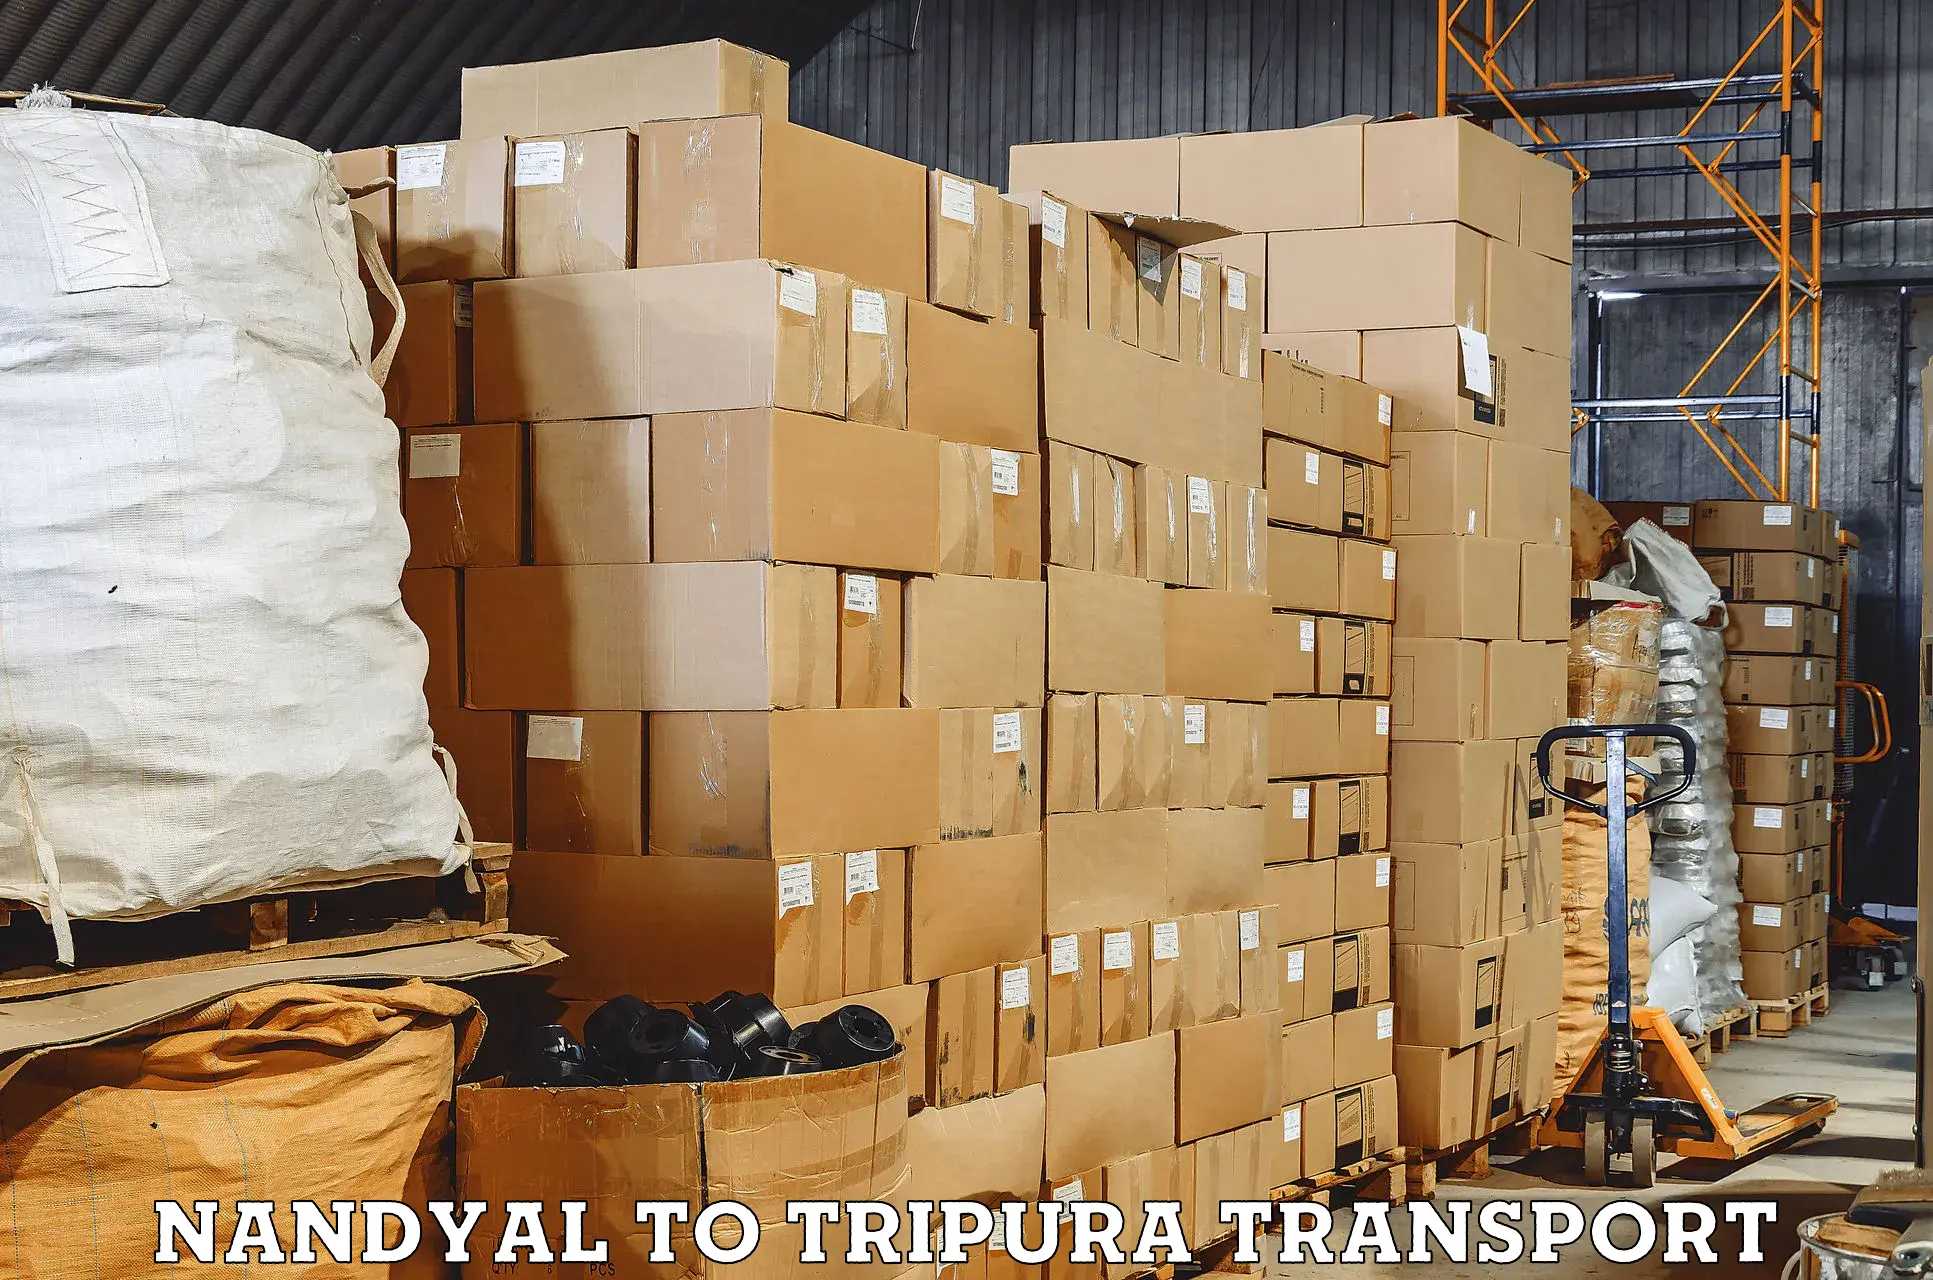 Transport in sharing Nandyal to Kamalpur